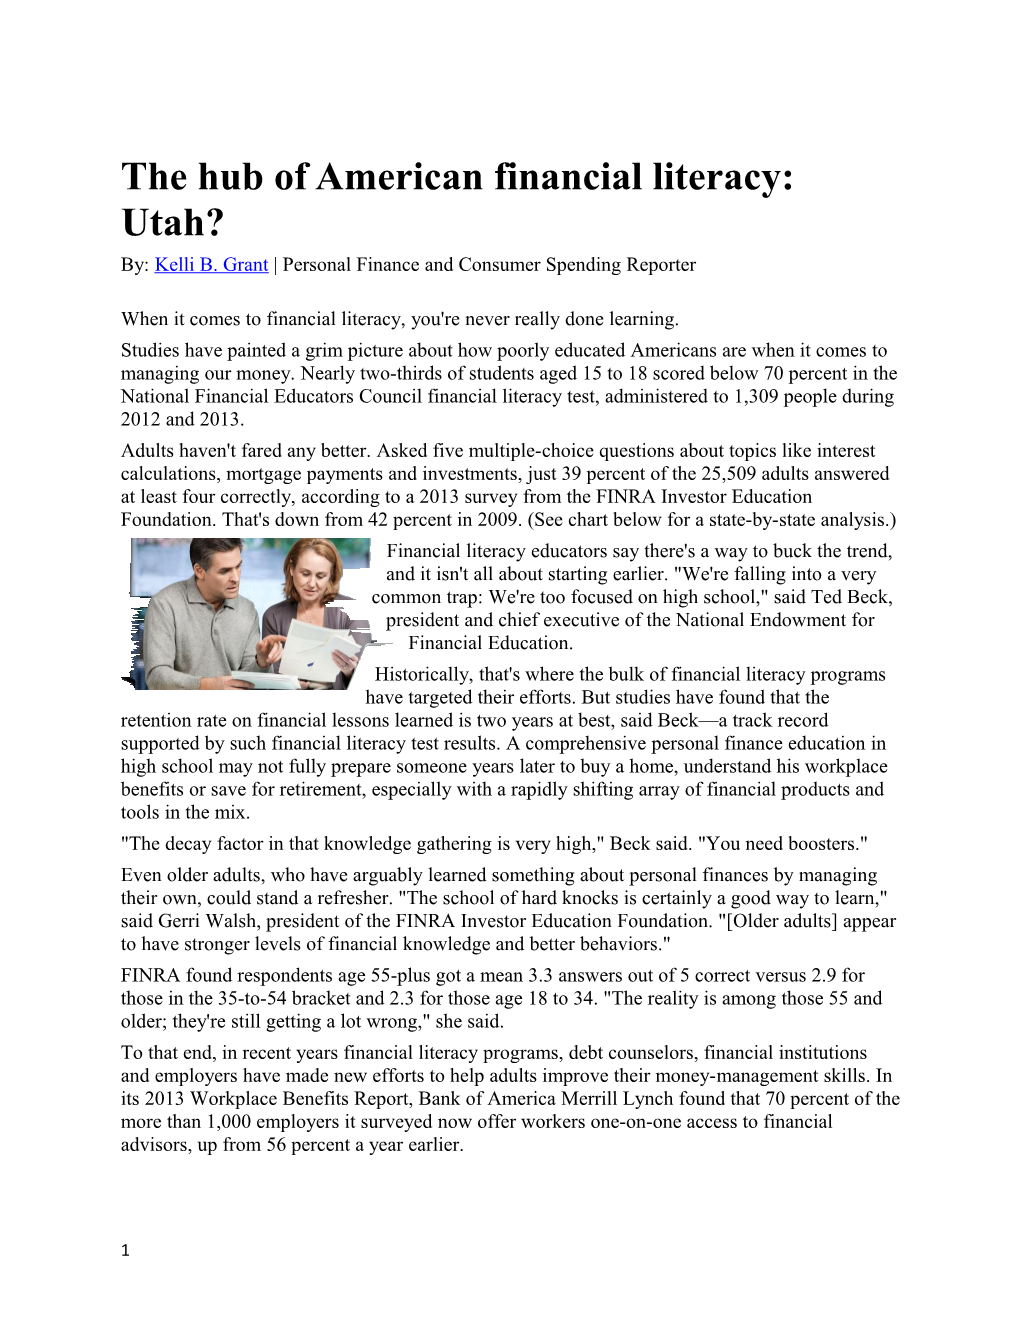 The Hub of American Financial Literacy: Utah?